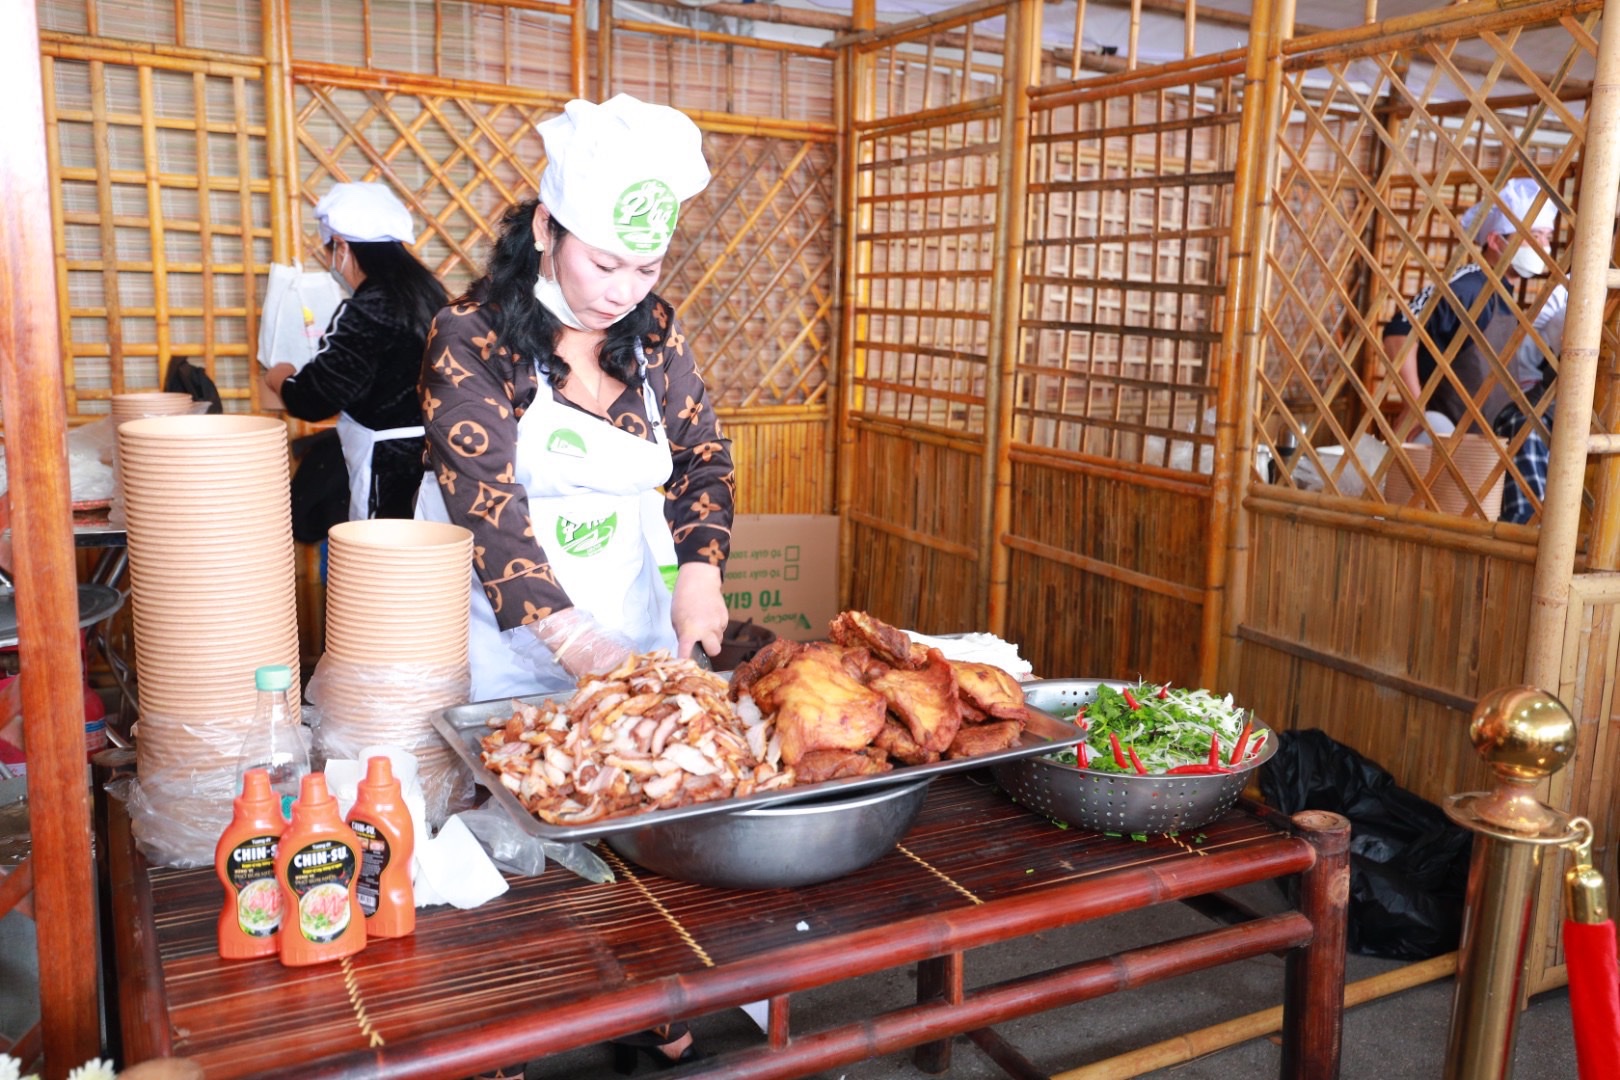 Hàng ngàn khách tham quan chứng kiến đầu bếp nổi tiếng chế biến phở cùng tương ớt Chin-su - Ảnh 5.